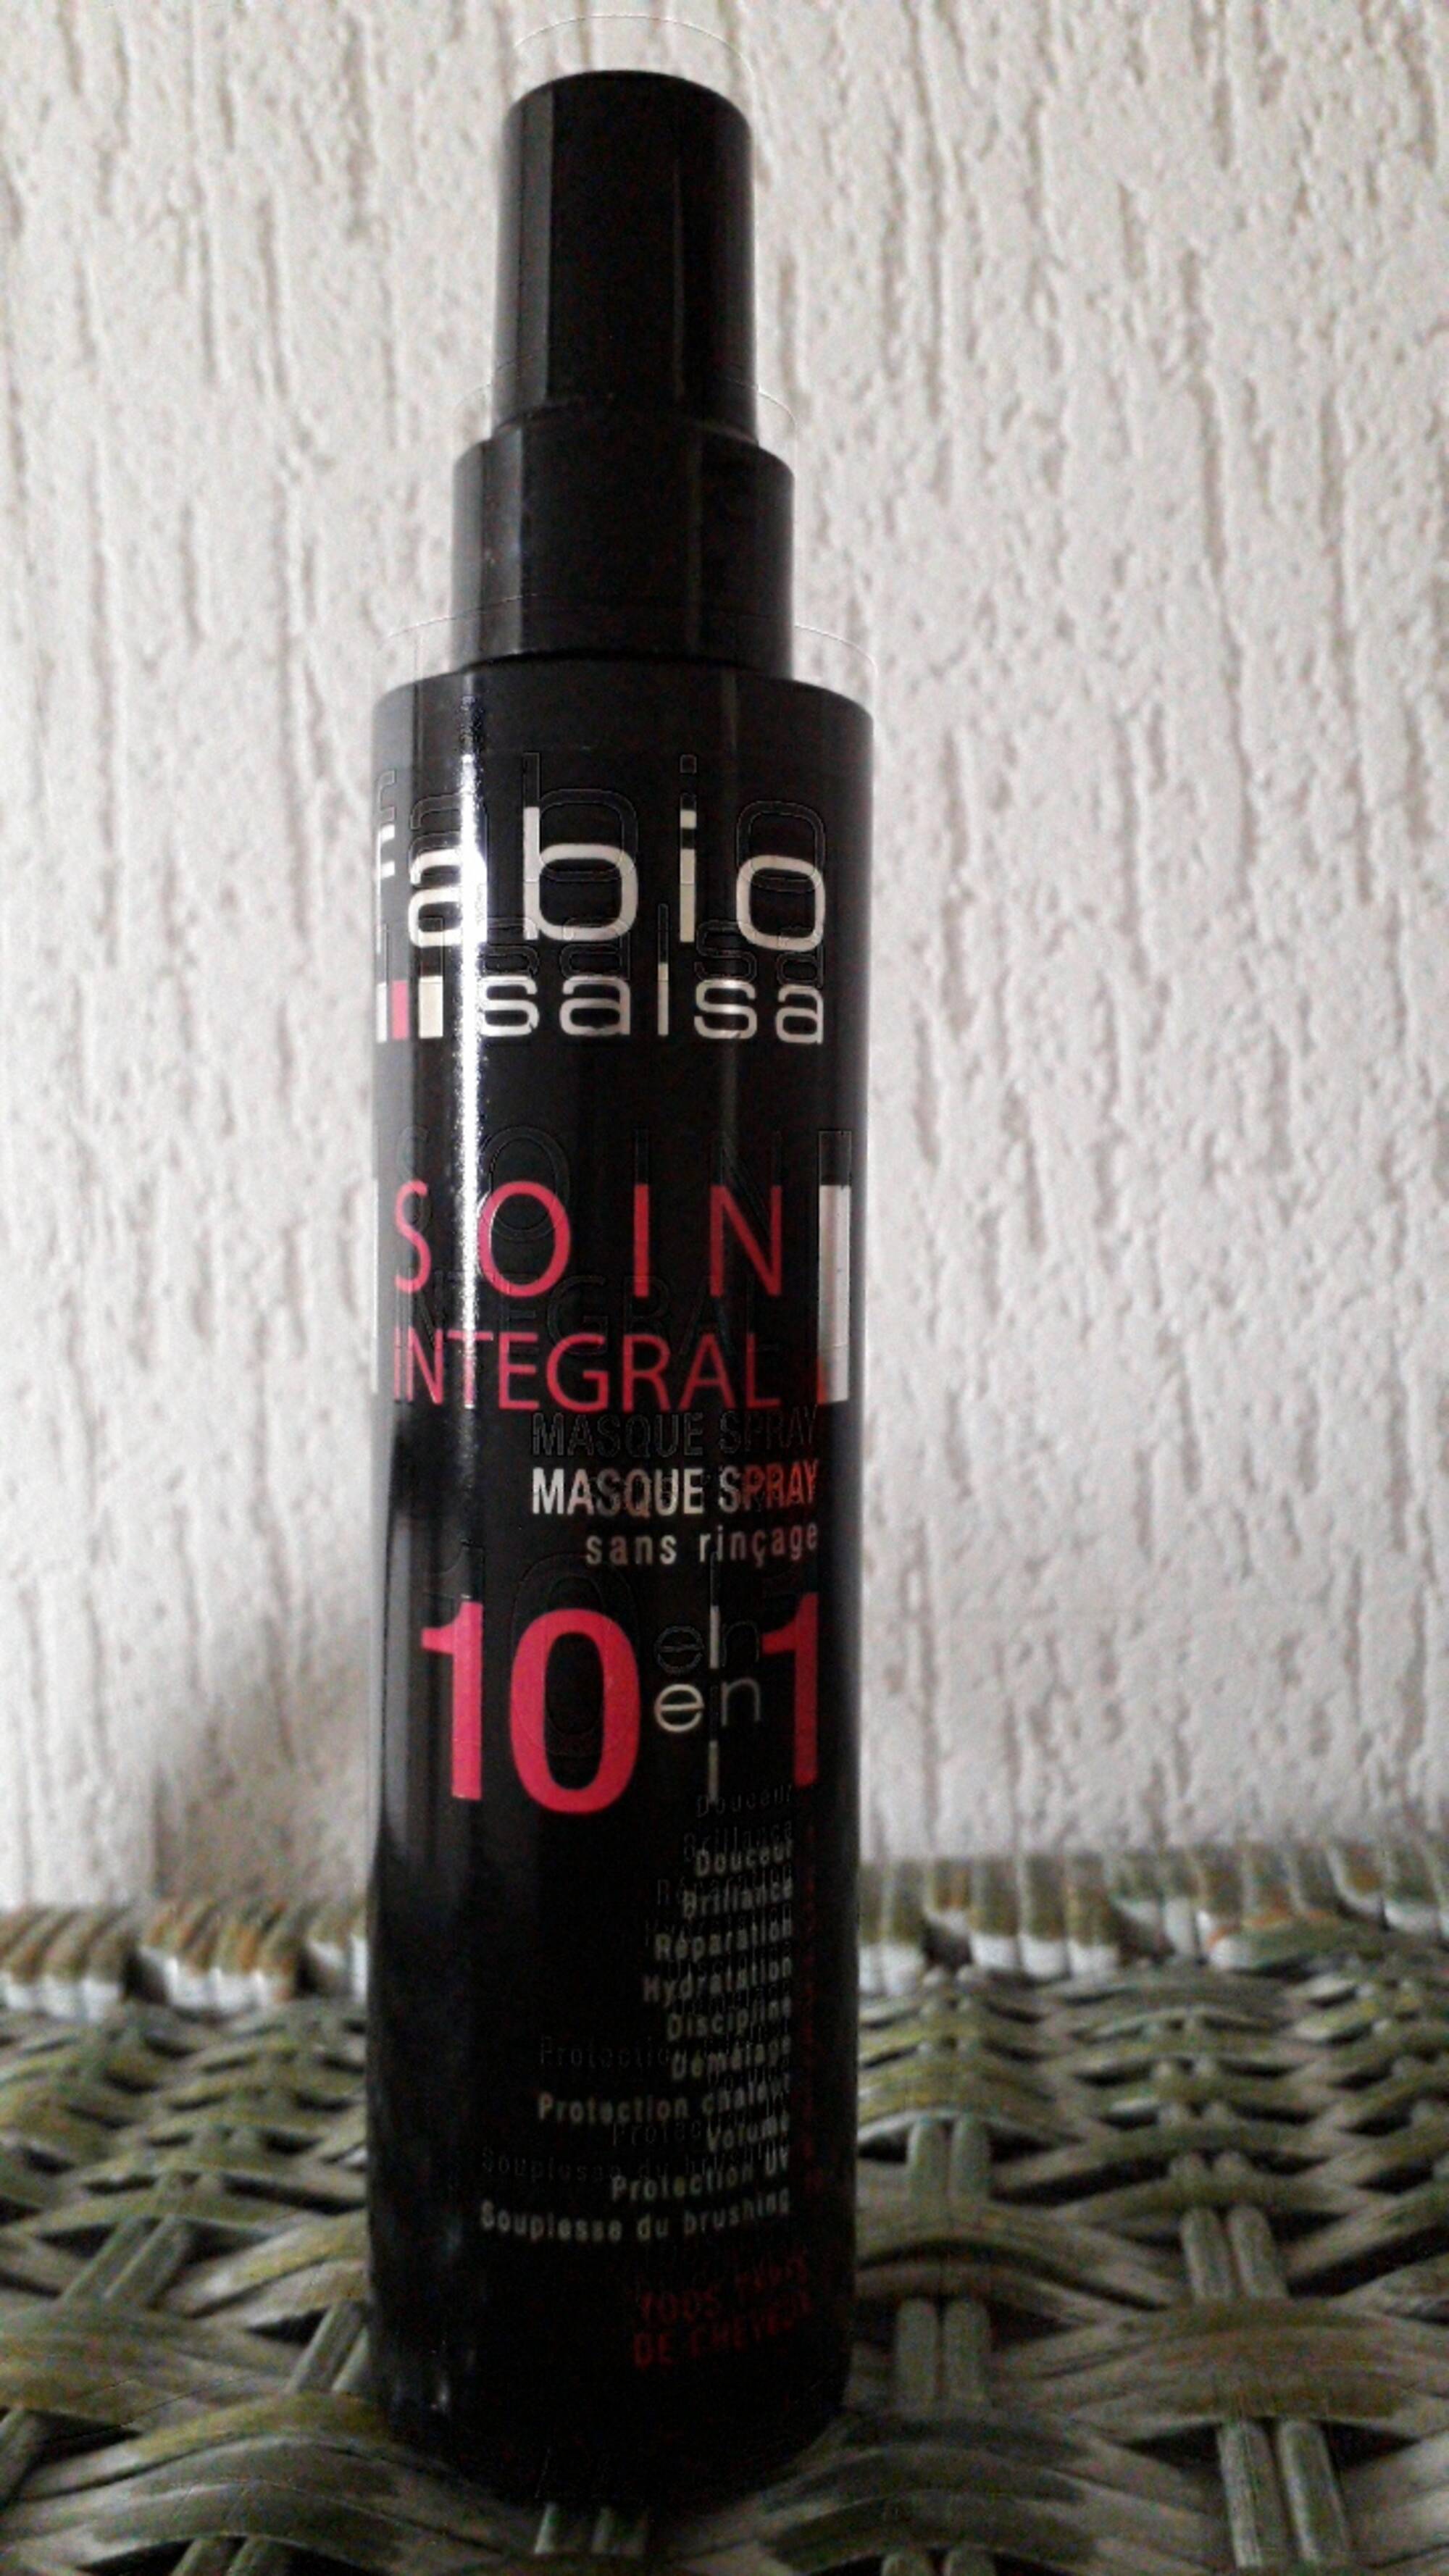 FABIO SALSA - Soin integral - Masque spray sans rinçage 10 en 1